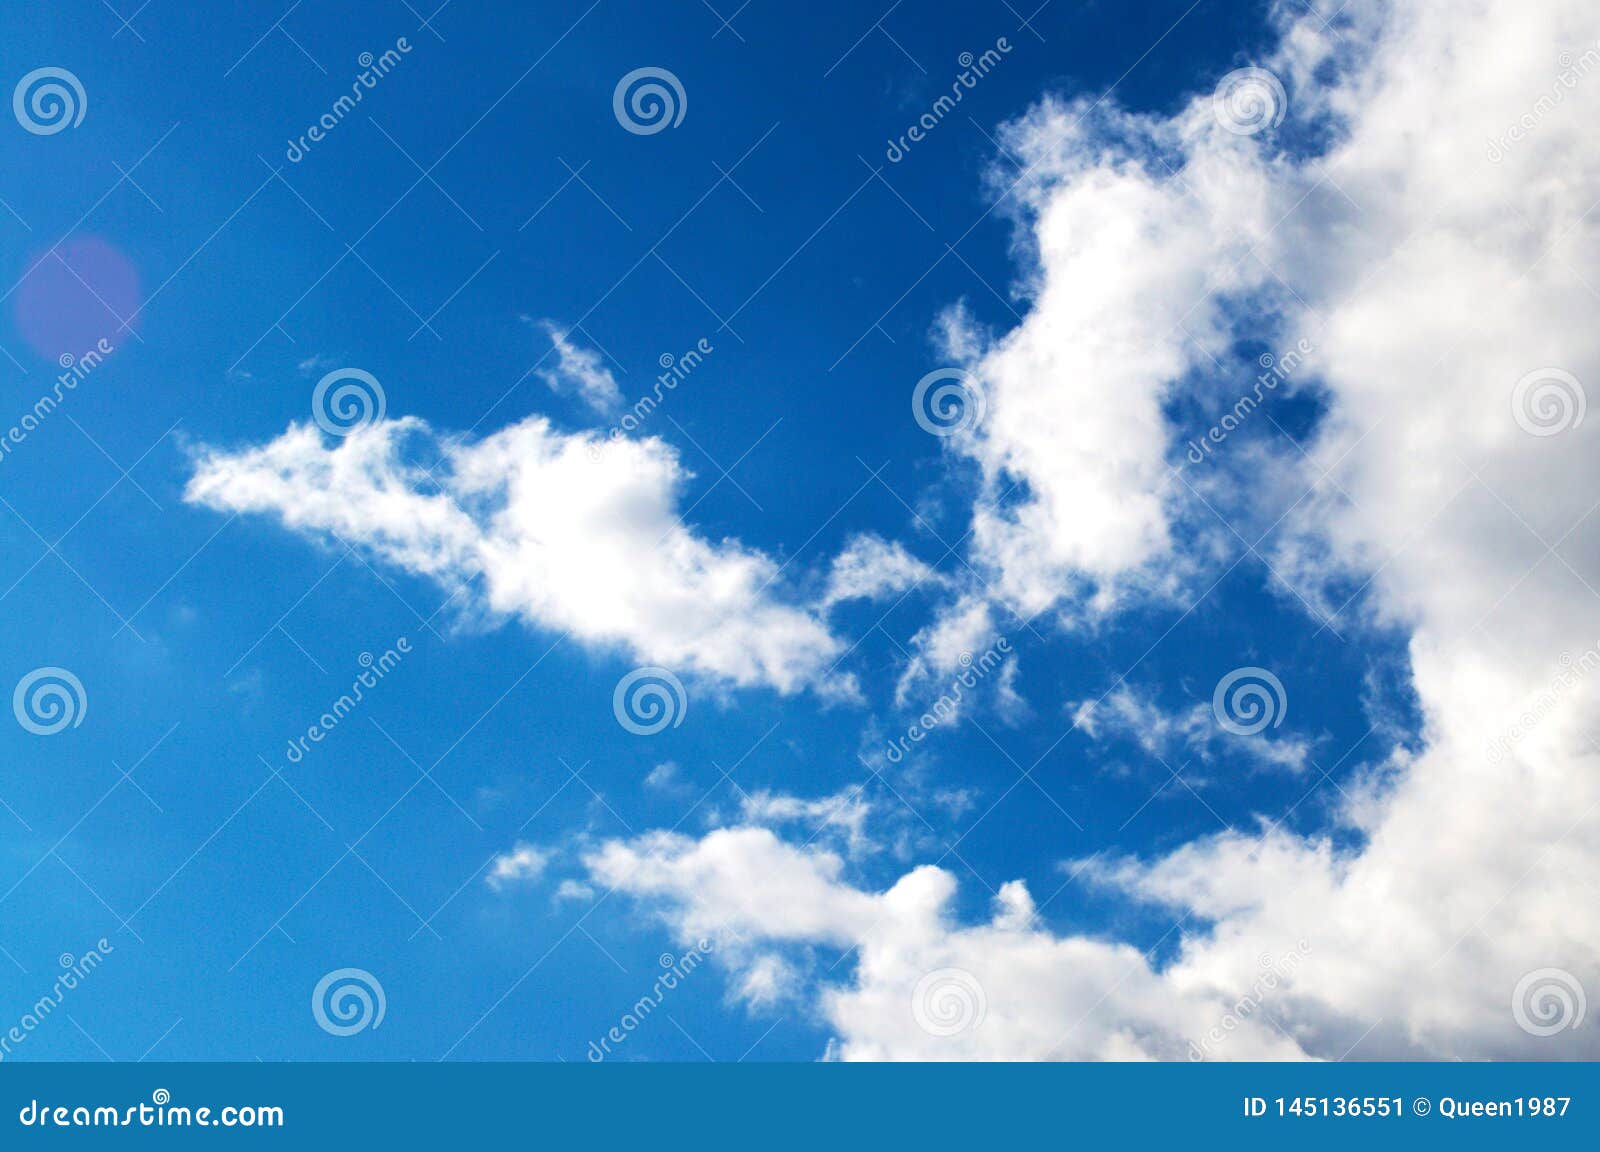 Biến động khí hậu có ảnh hưởng đến chúng ta hàng ngày. Thật tuyệt khi bạn có thể tạo cho mình một không gian trong xanh với những đám mây trắng rực rỡ. Nhấn vào đây để xem ngay bức ảnh về biến đổi khí hậu với bầu trời xanh và những đám mây trắng tuyệt đẹp.